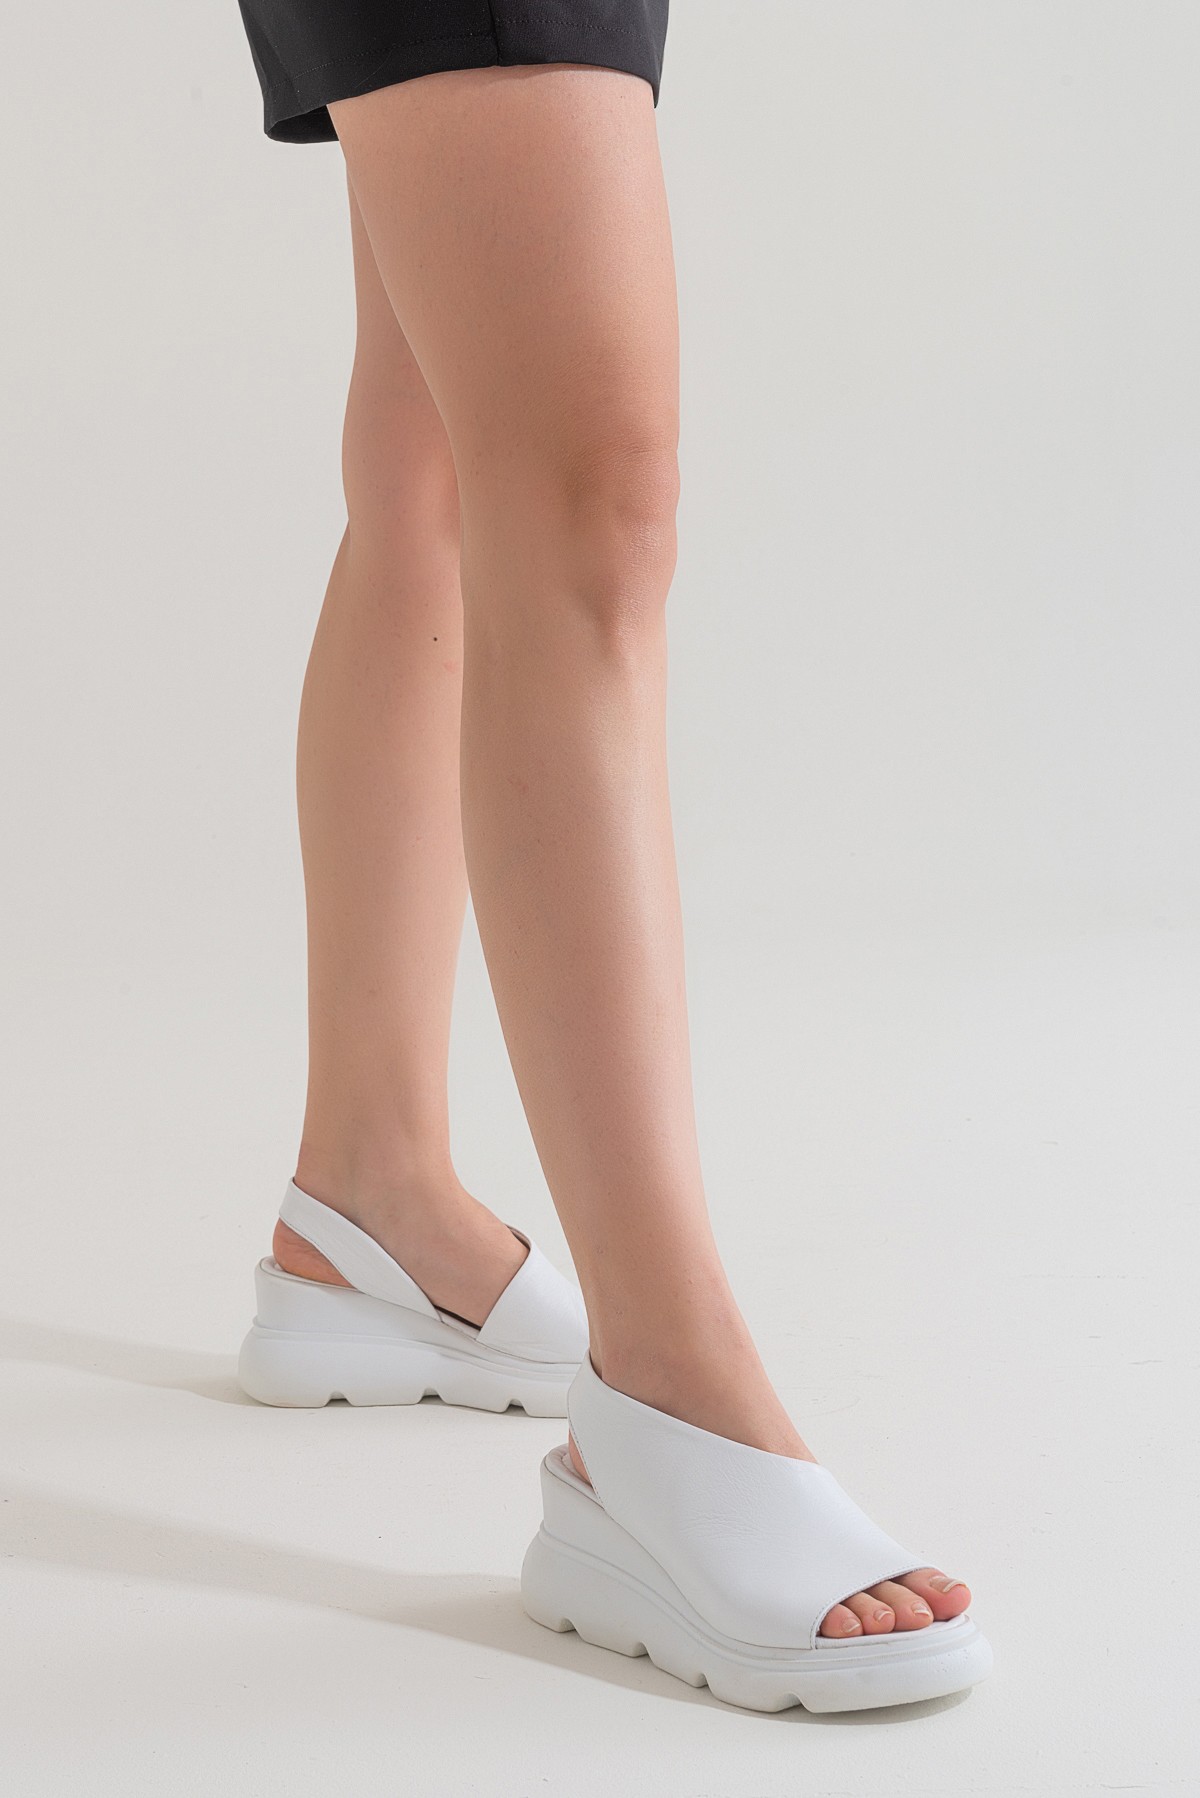 Wella Kadın Dolgu Topuk Sandalet - Beyaz